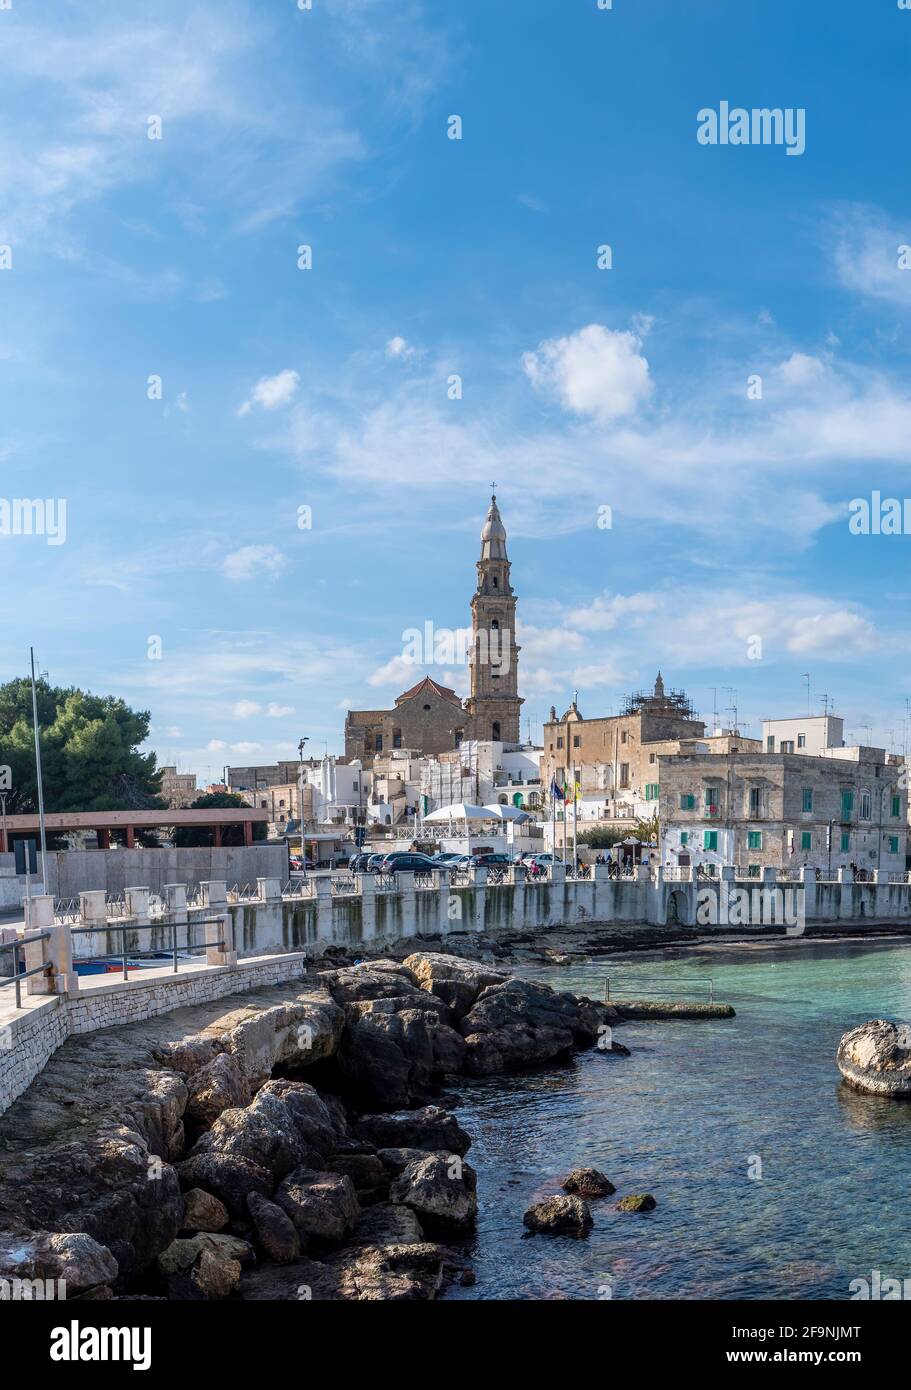 Monopoli harbor in the Metropolitan City of Bari and region of Apulia (Puglia), Italy and the Basilica Concattedrale Maria Santissima della Madia. Stock Photo